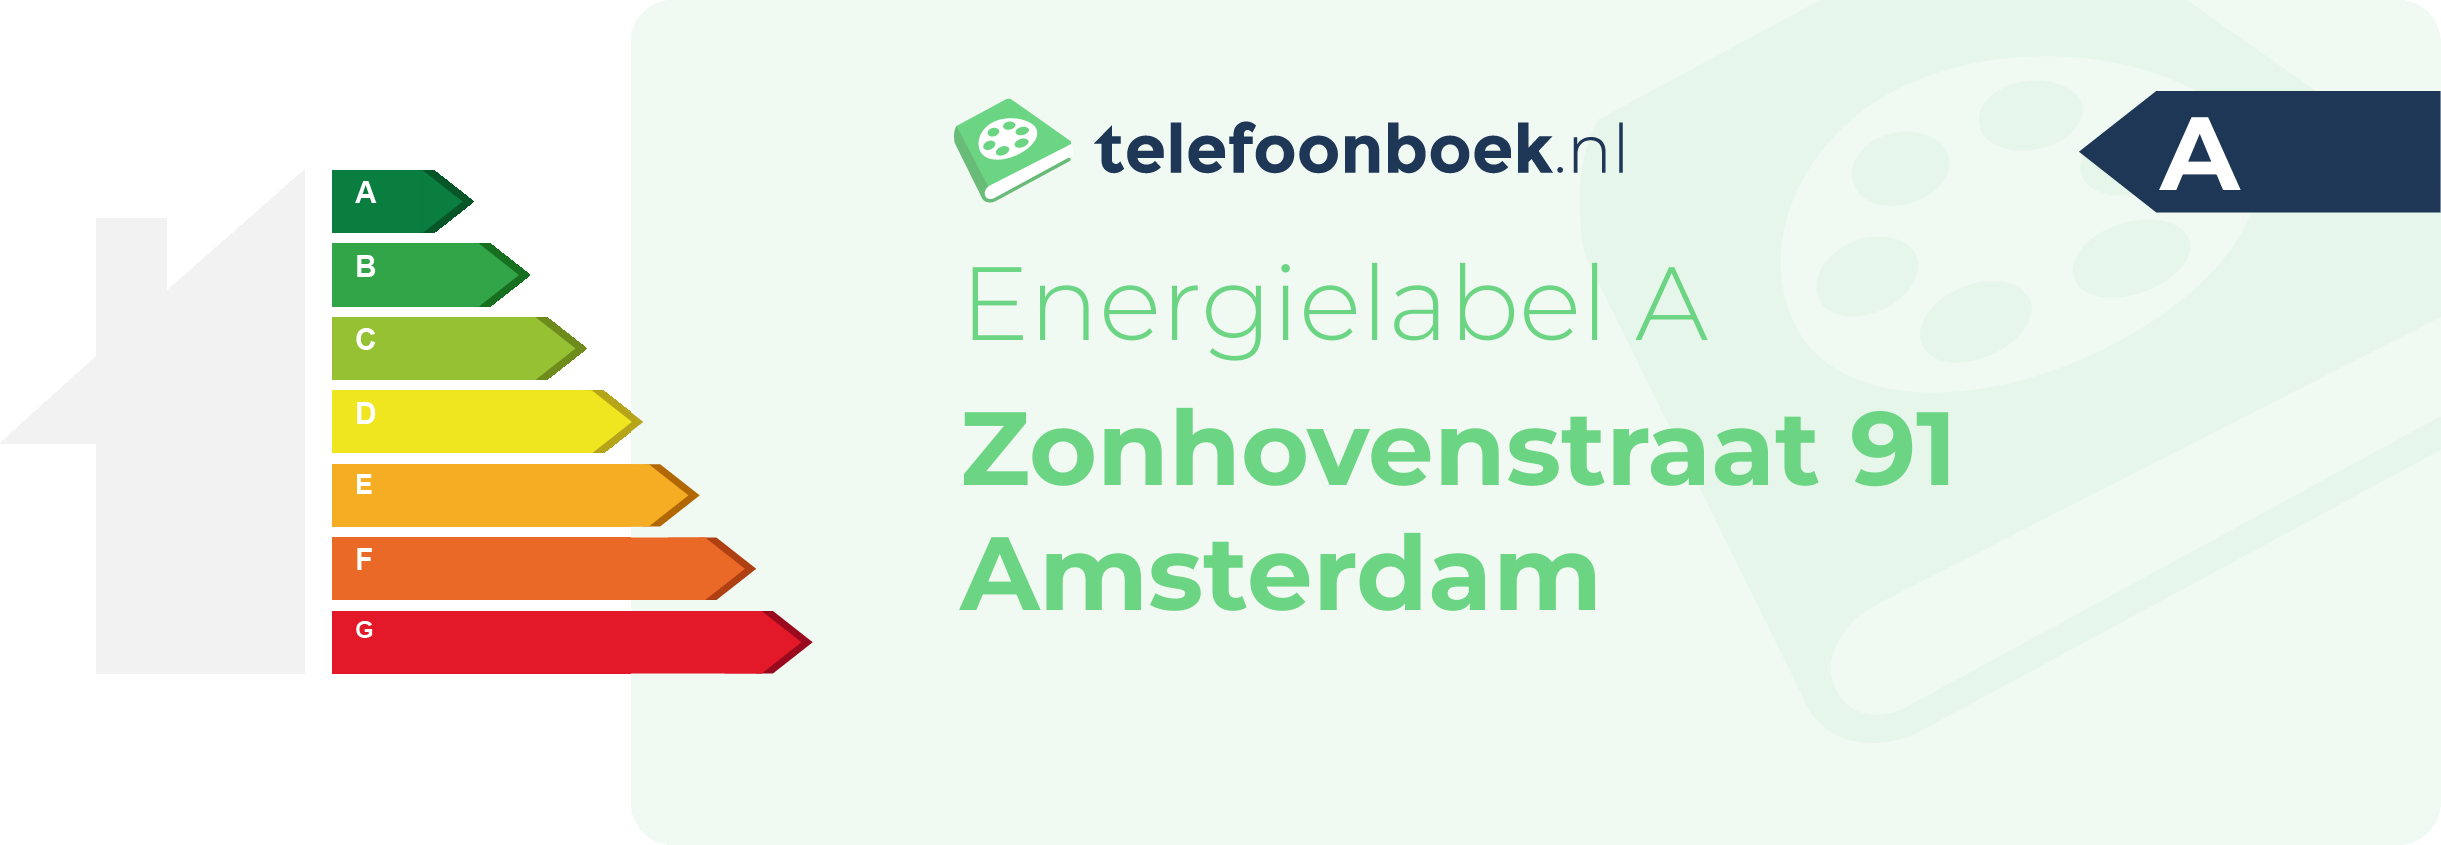 Energielabel Zonhovenstraat 91 Amsterdam